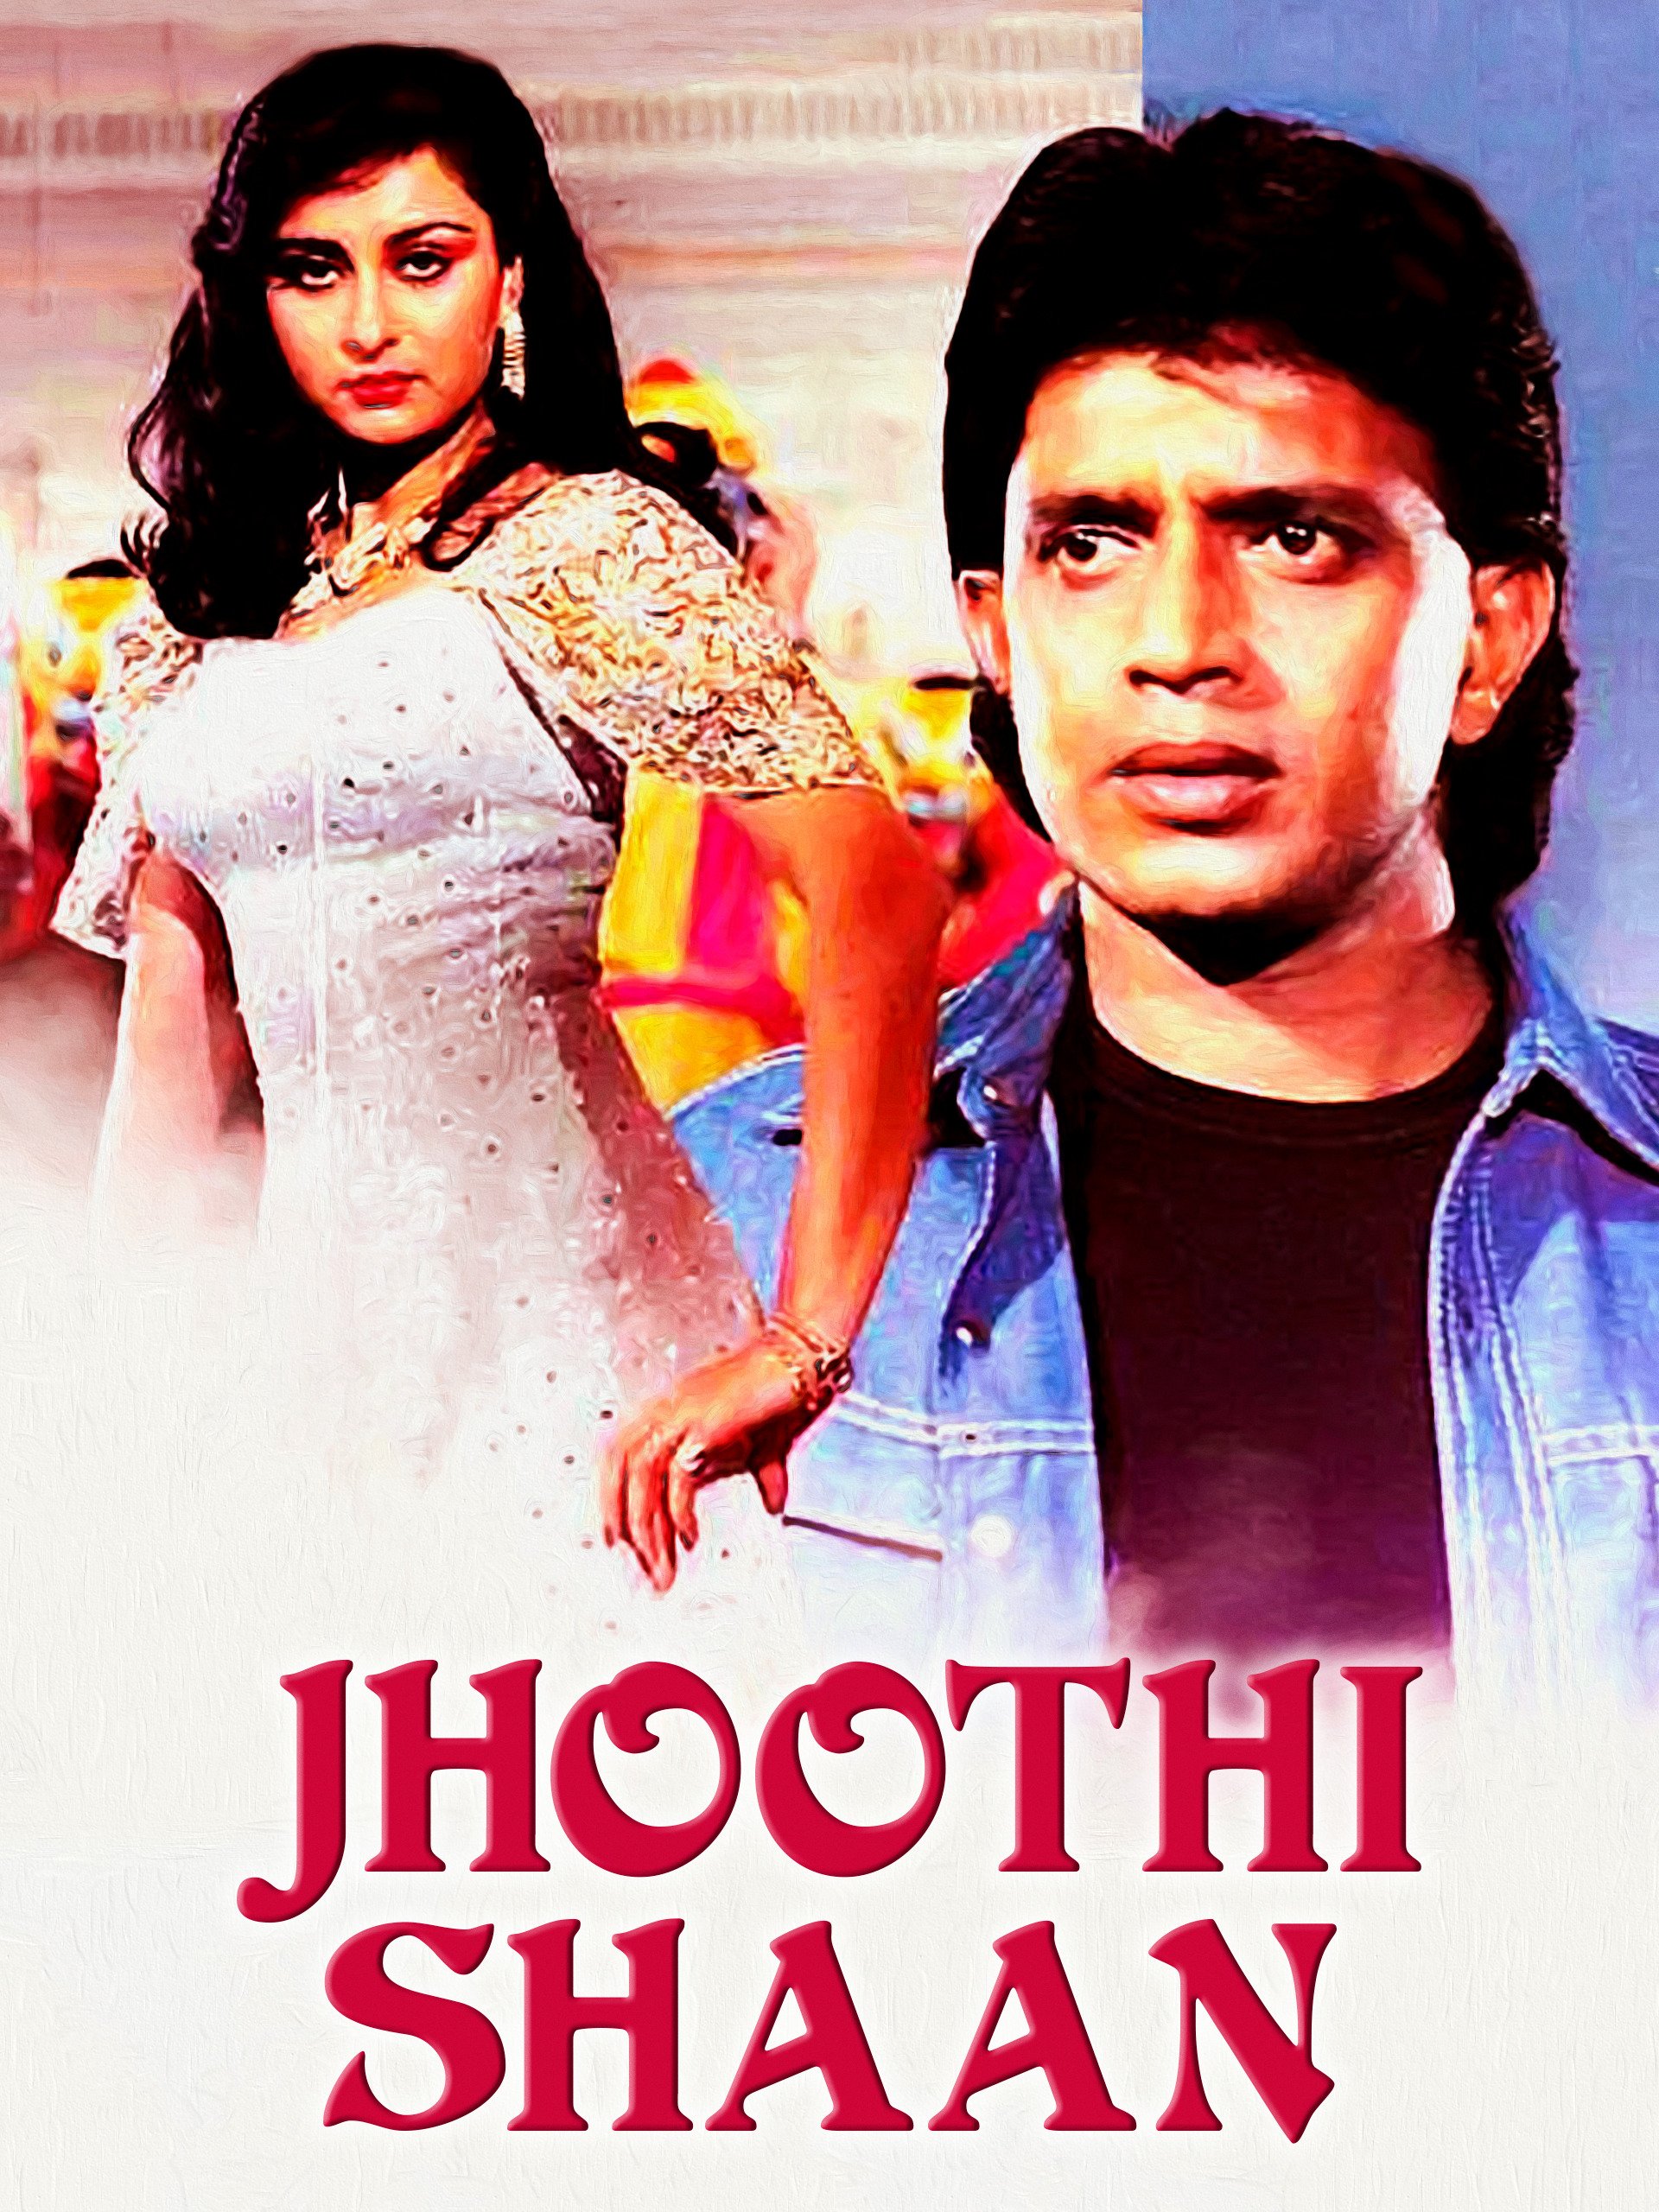 Jhoothi Shaan 1991 8632 Poster.jpg